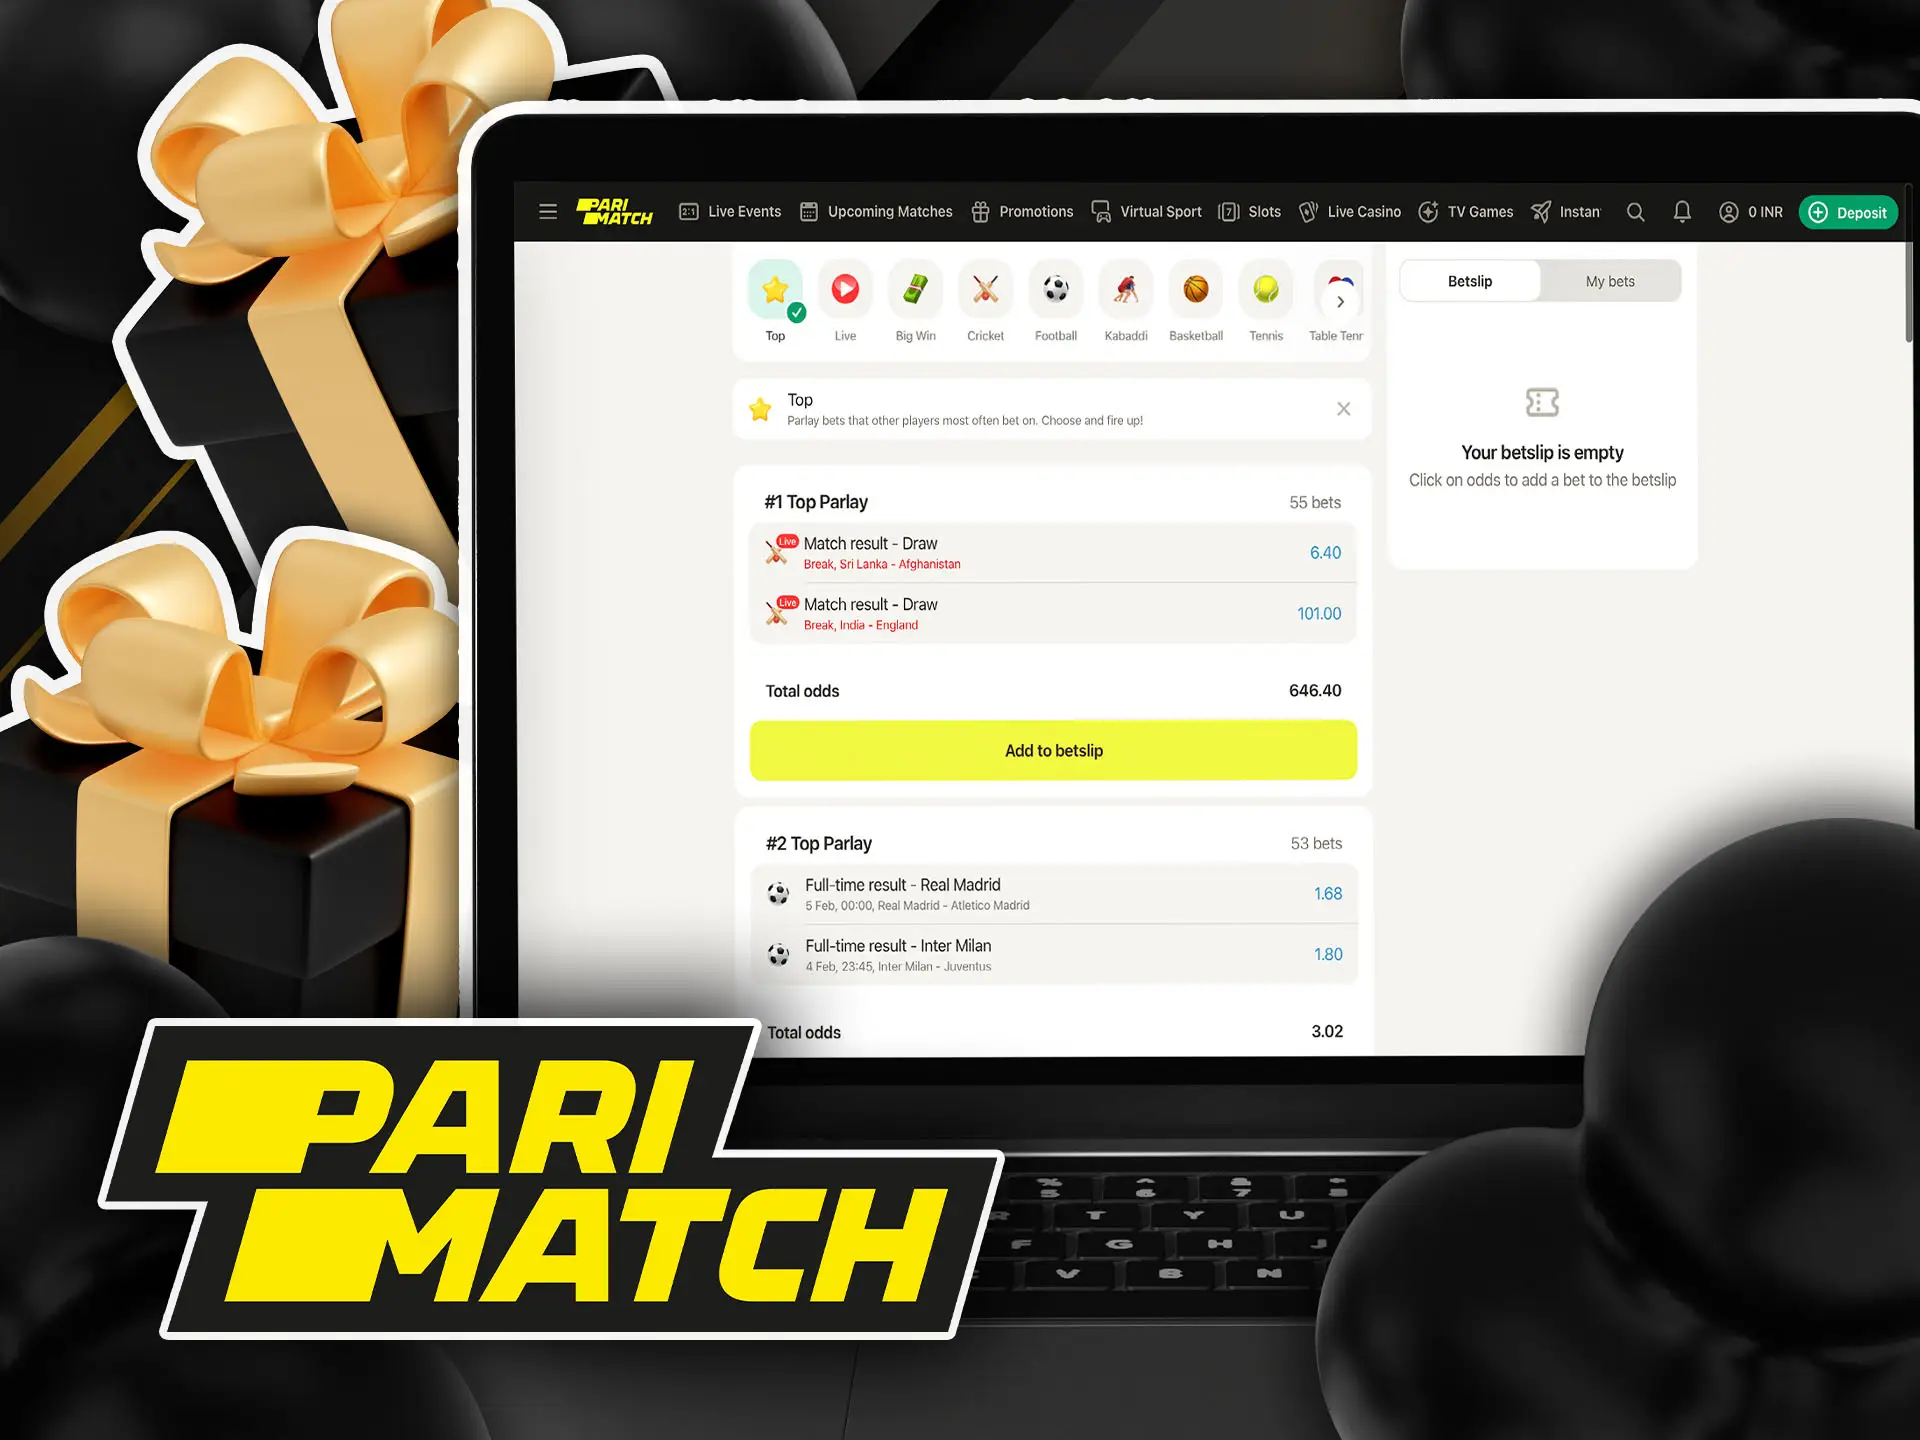 Go to the Parlays bonus for parimatch in India.